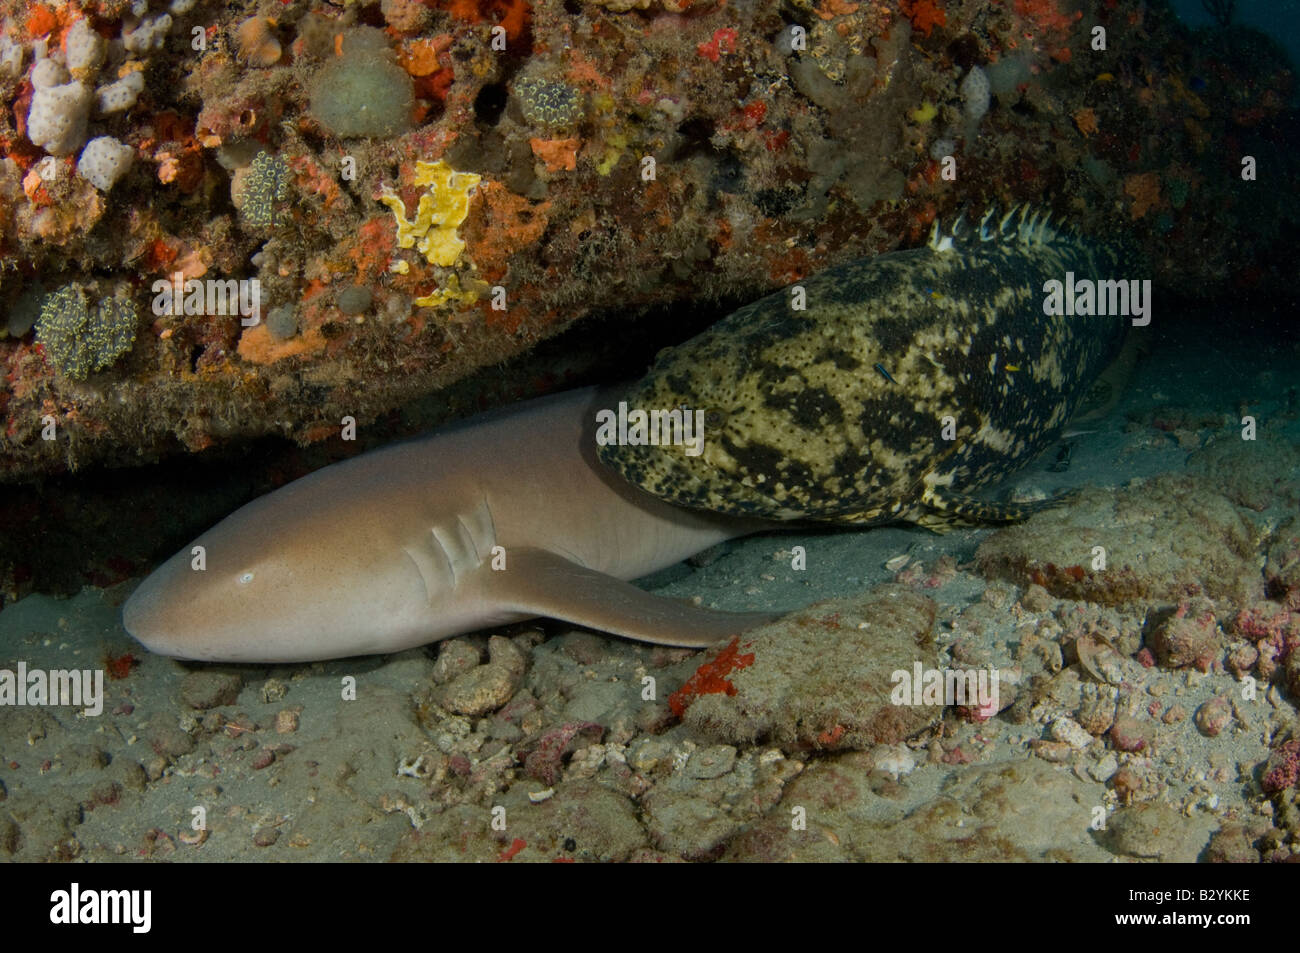 Un requin nourrice Ginglymostoma cirratum et Epinephelus itajara mérous géants partager un rebord à Juno Beach FL Banque D'Images